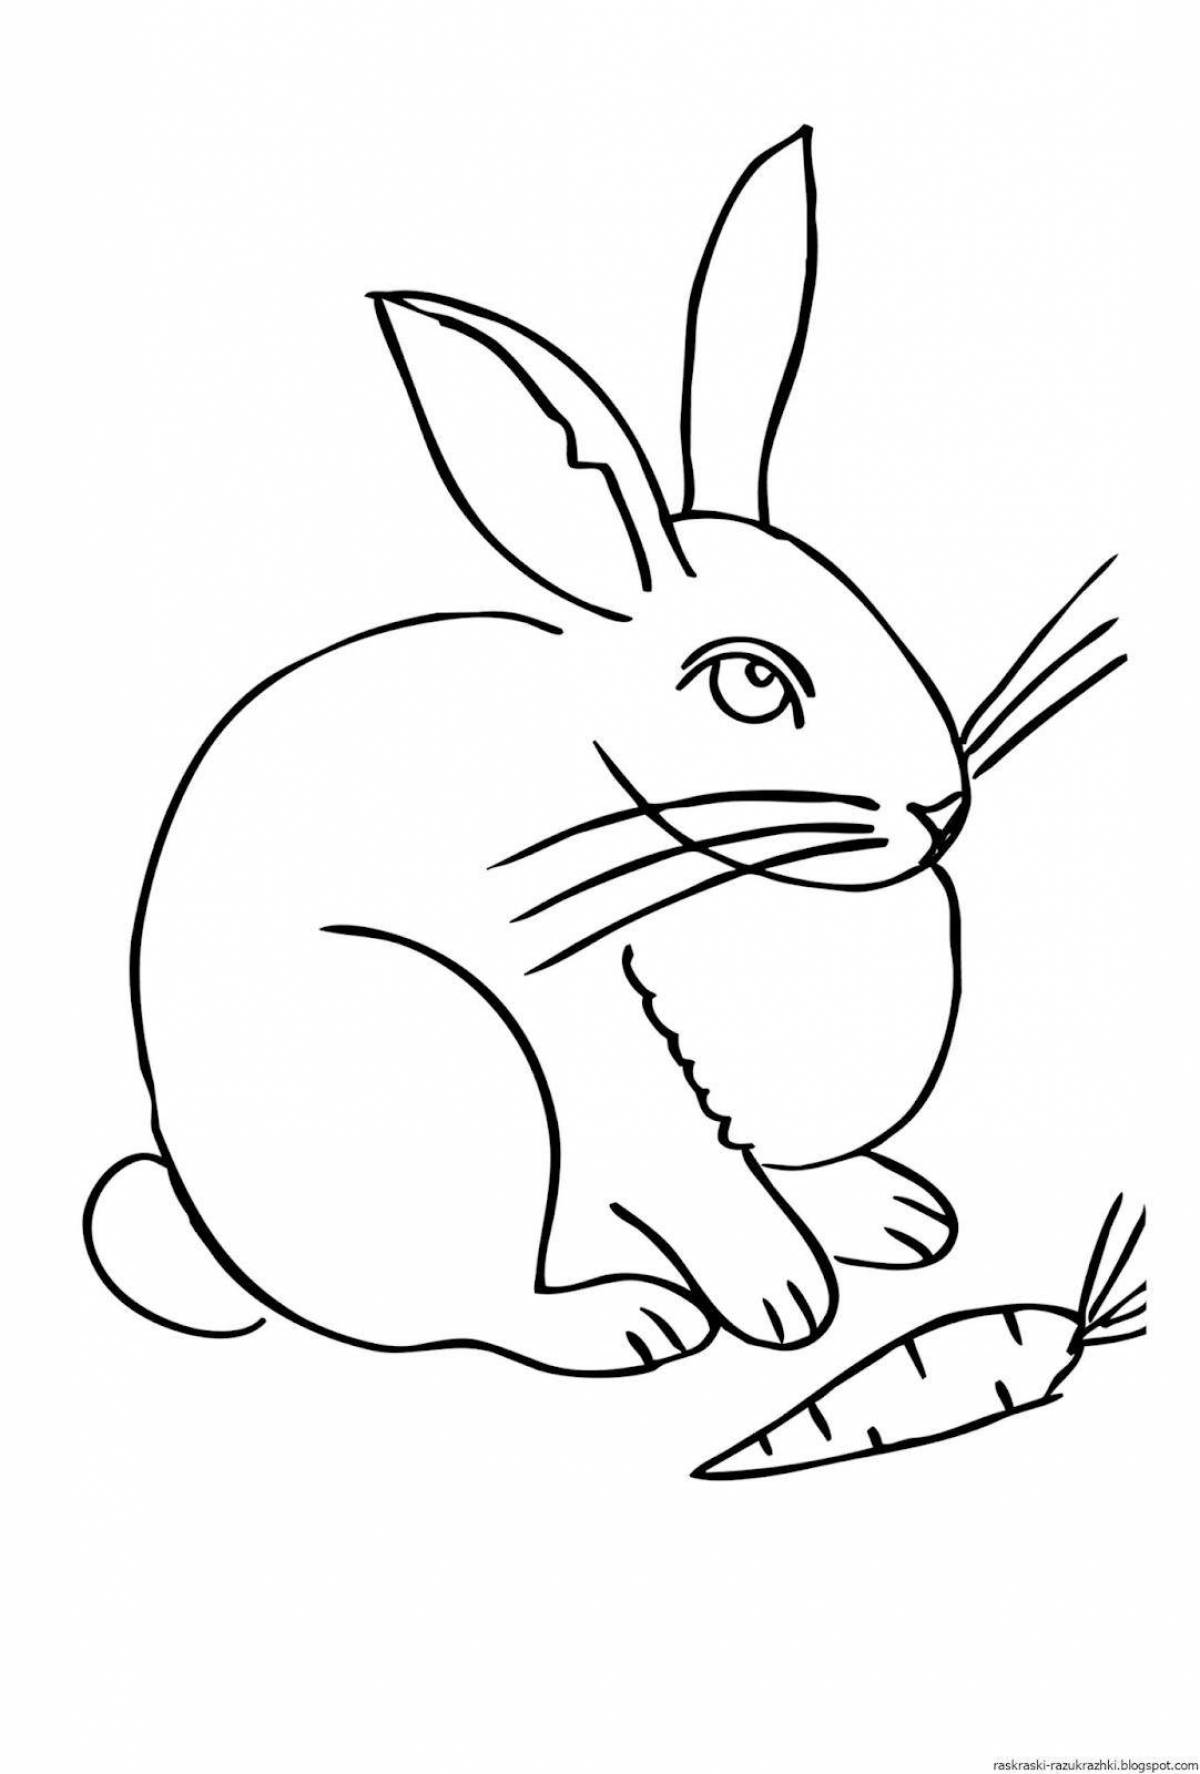 Cozy rabbit coloring book